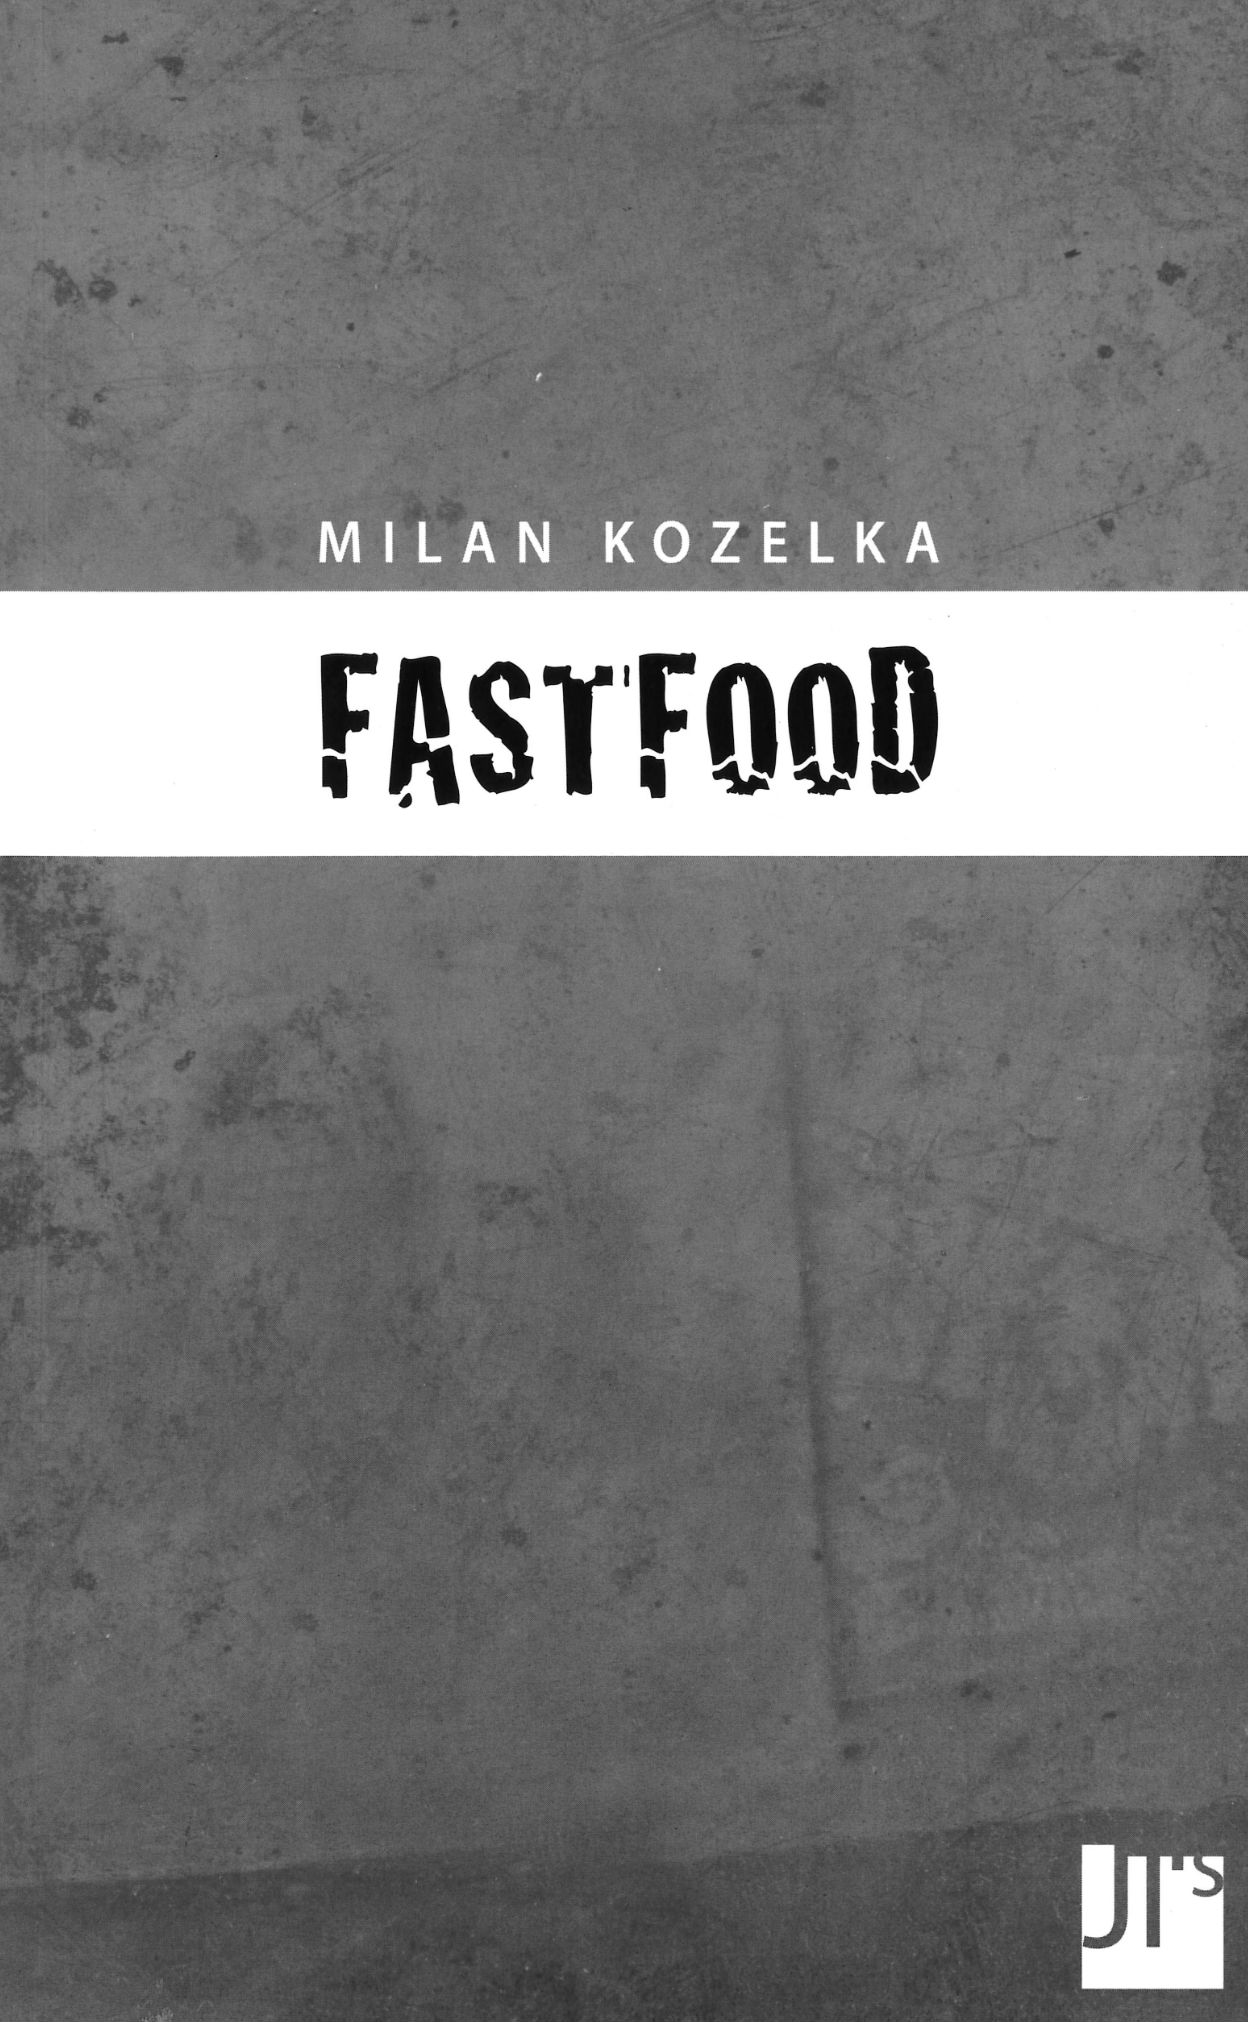 Milan Kozelka: Fastfood